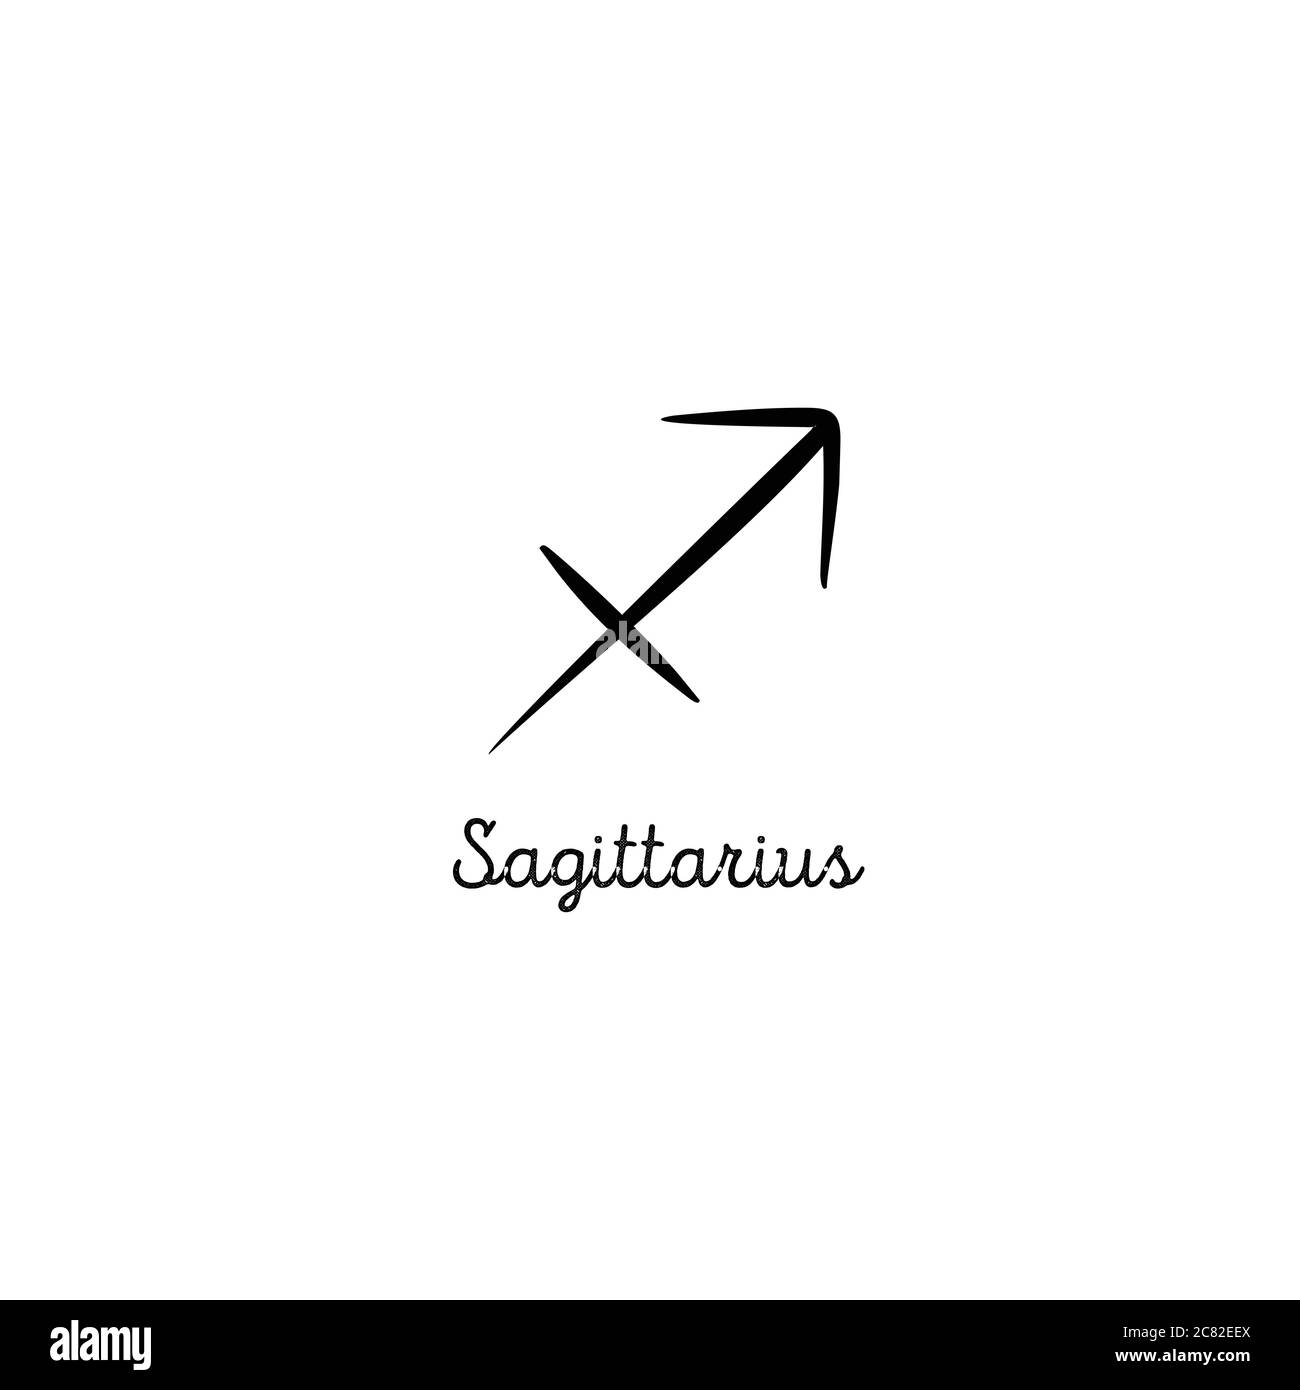 Sagittarius Symbol Designs